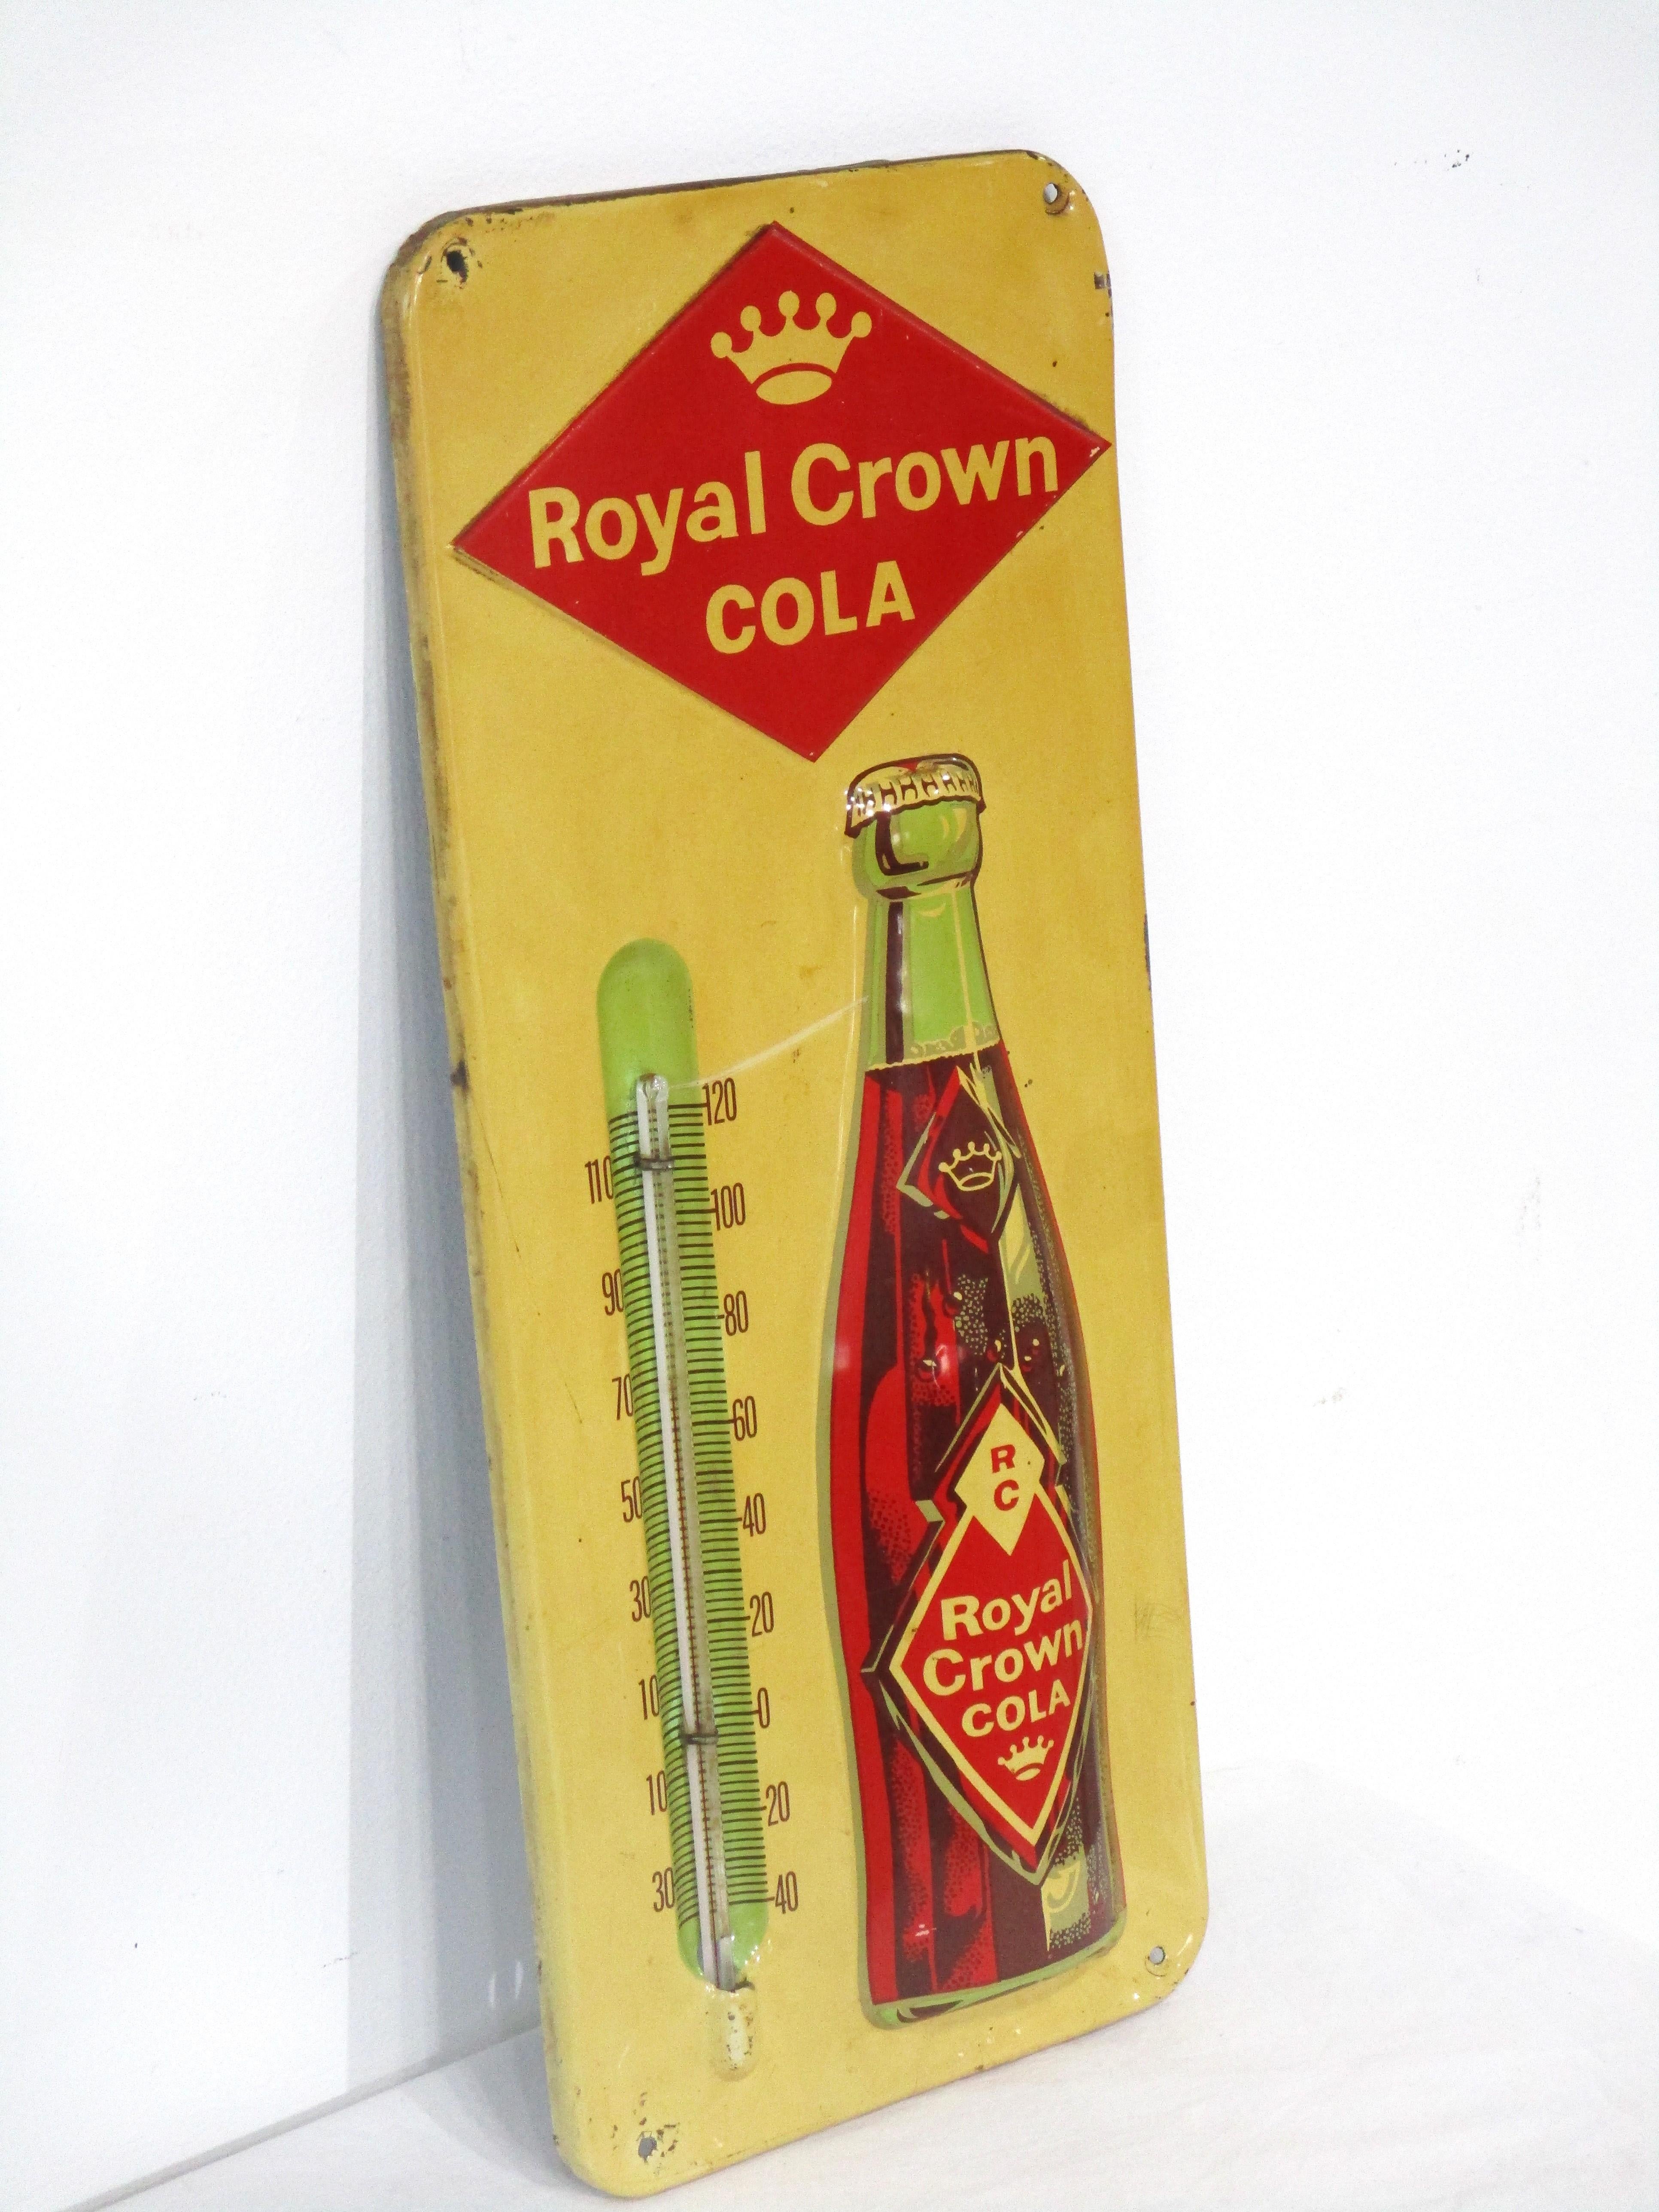 Thermomètre publicitaire Royal Crown Cola lithographié en métal avec bouteille embossée donnant à la pièce un certain intérêt dimensionnel. Il s'agit d'un modèle de production précoce doté d'un logo angulaire en forme de diamant, datant de la